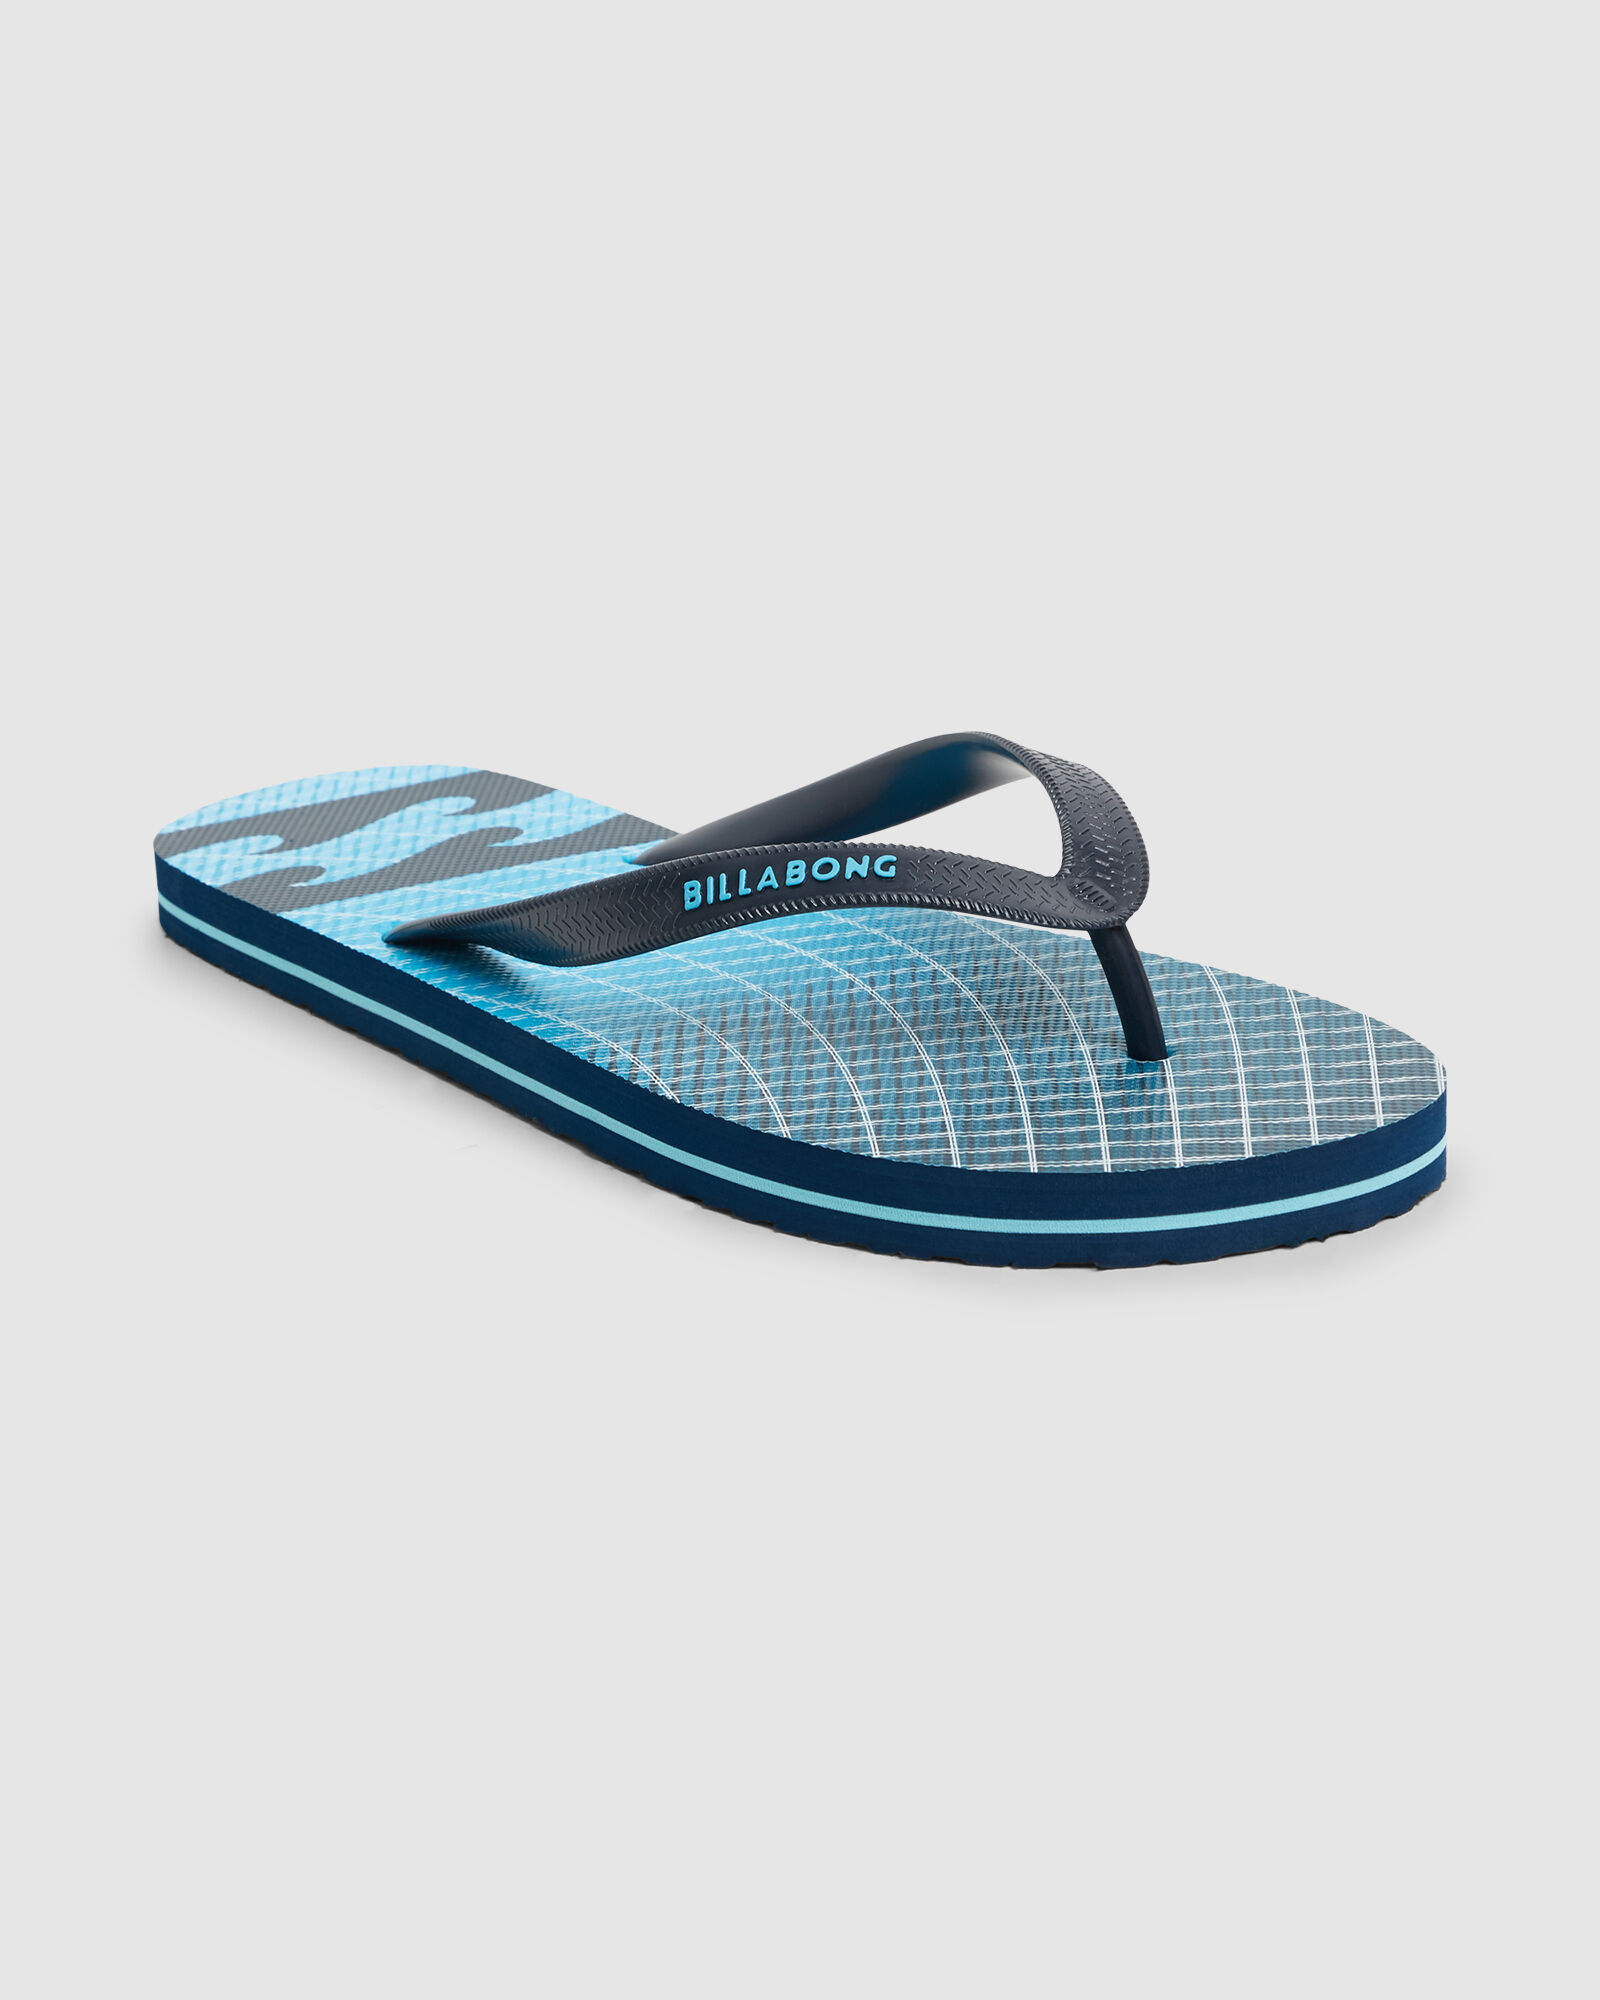 BILLABONG NEW MENS UNISEX Flip Flops Thongs Sandals FLUID PRO NAVY BLUE Logo 